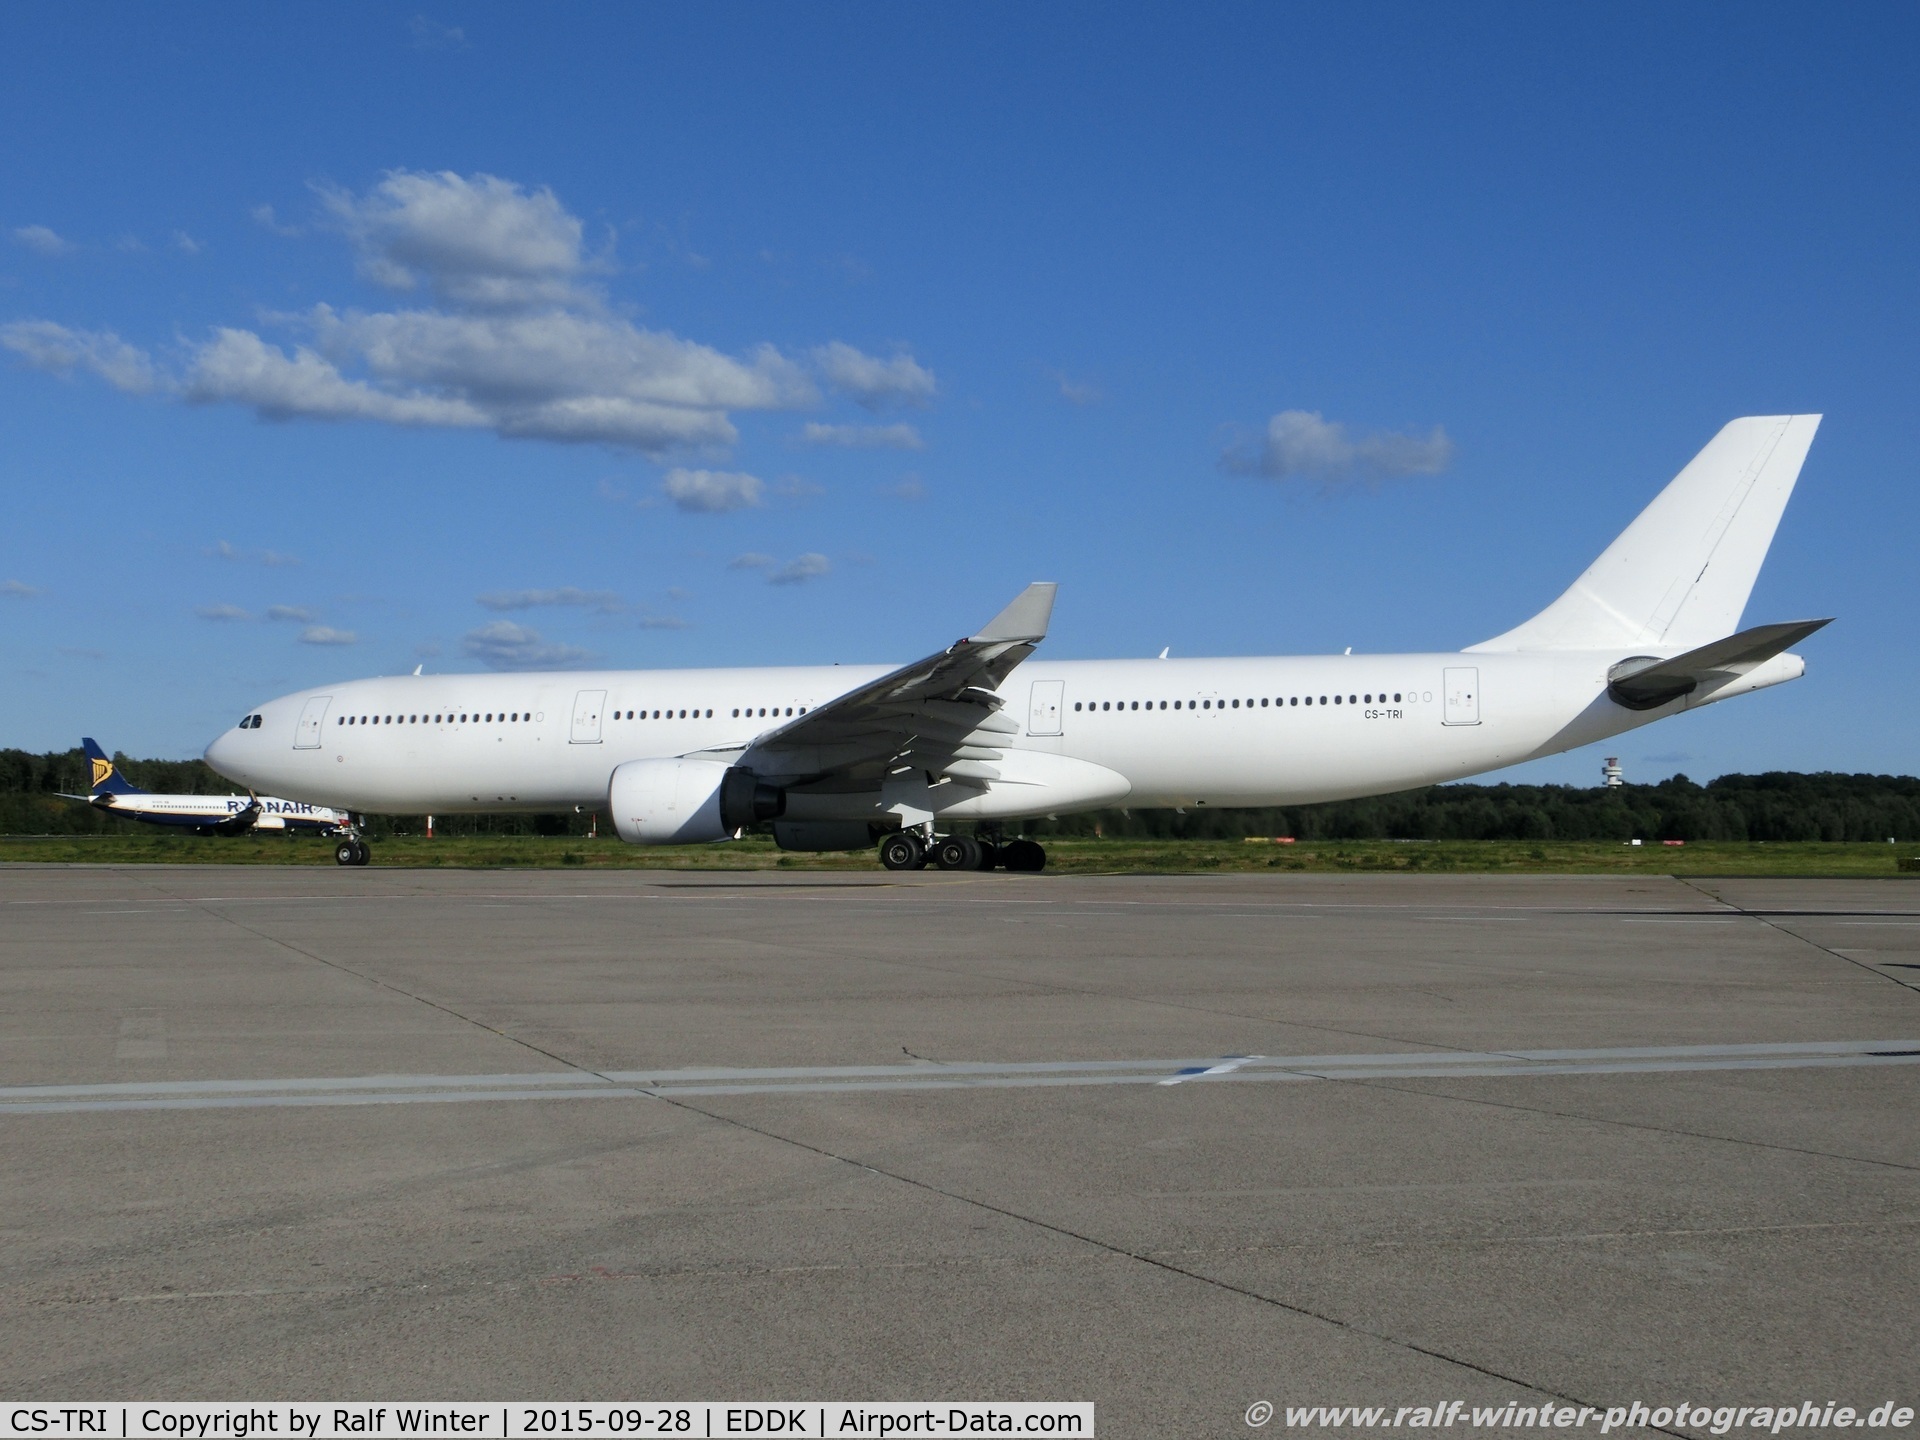 CS-TRI, 1996 Airbus A330-322 C/N 120, Airbus A330-322 - 4K HFY HiFly - 127 - CS-TRI - 28.09.2015 - CGN